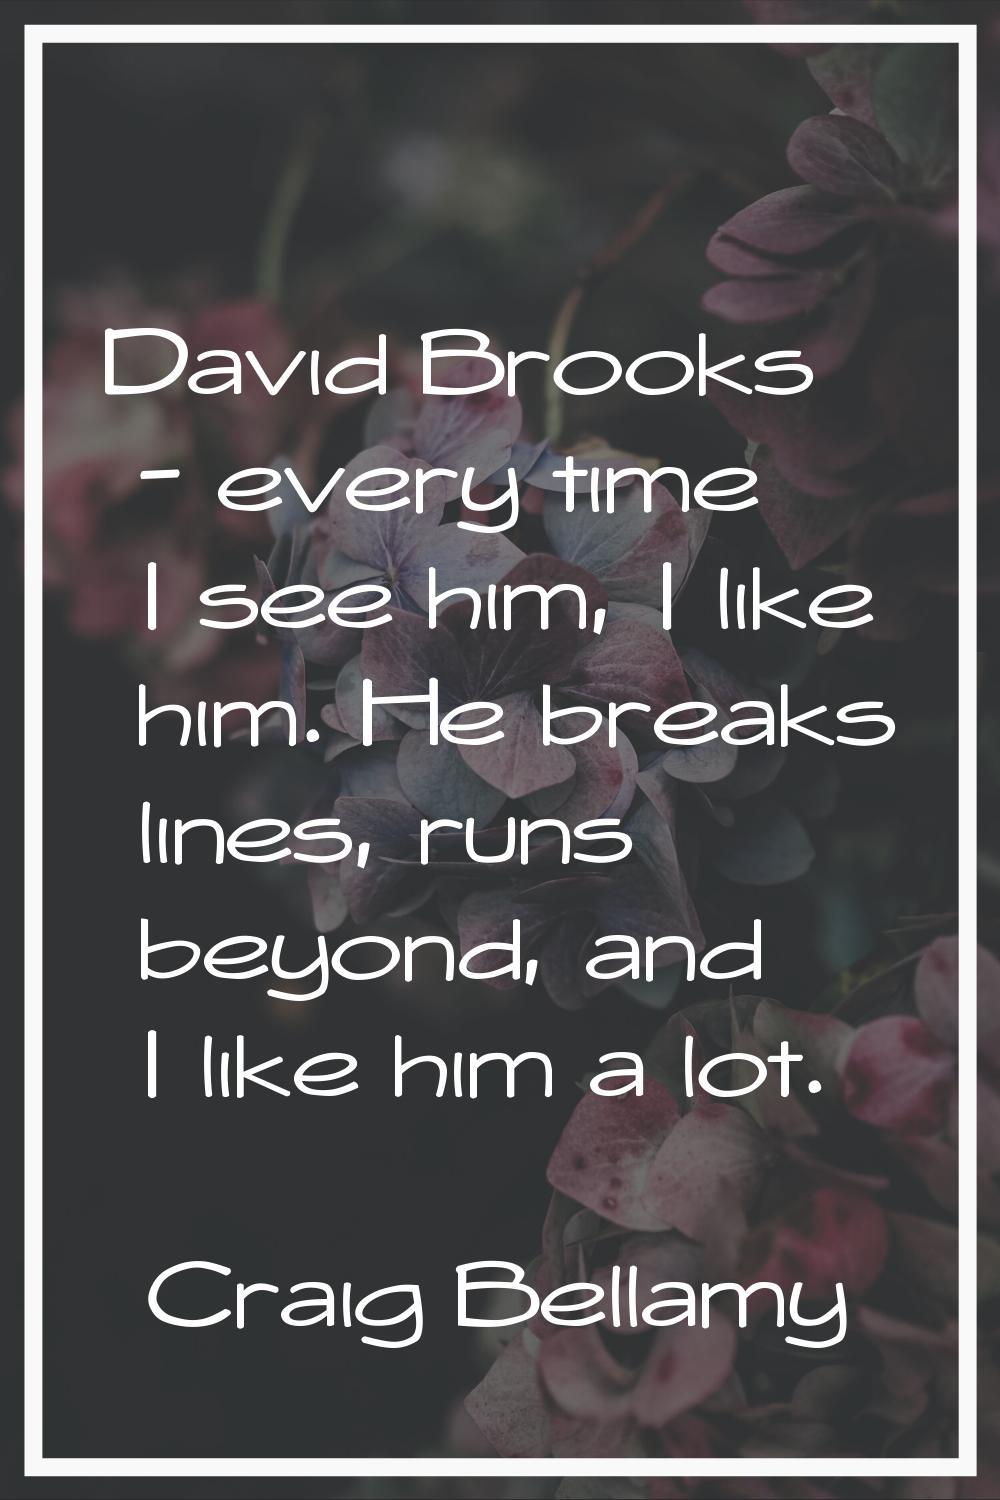 David Brooks - every time I see him, I like him. He breaks lines, runs beyond, and I like him a lot